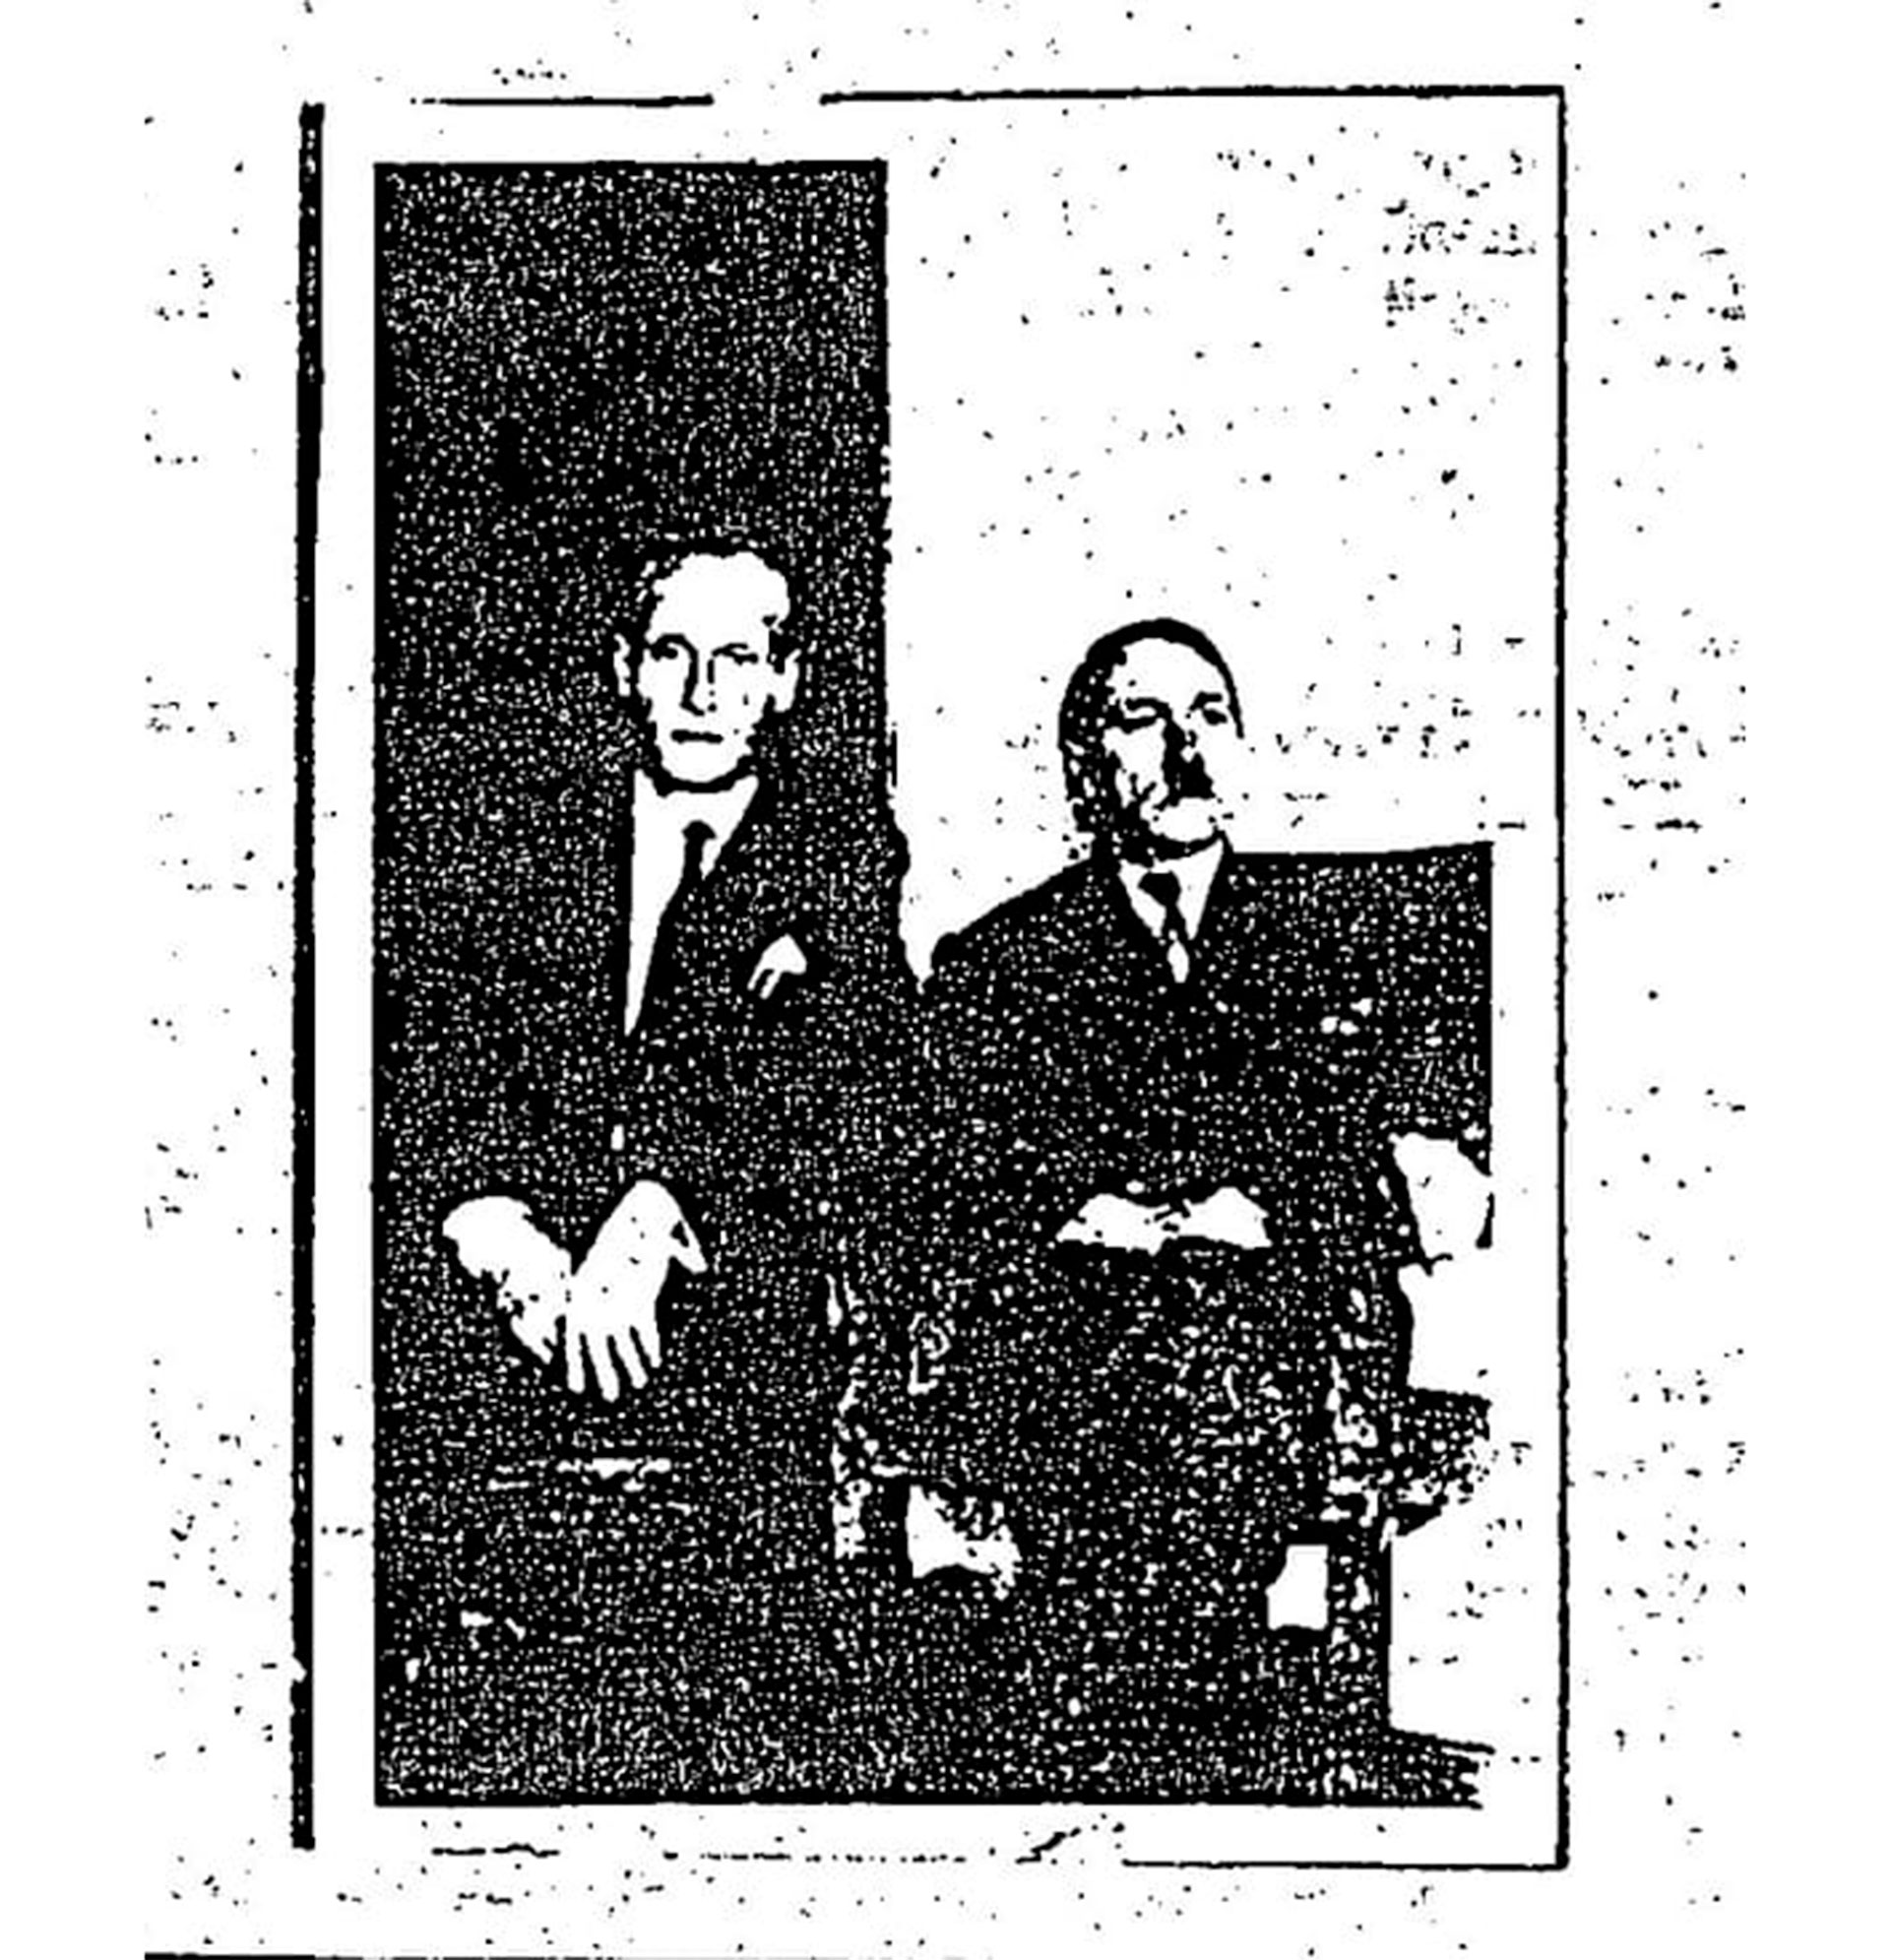 Uno de los archivos de inteligencia, del 3 de octubre de 1955, contiene denuncias de un ex soldado de las SS llamado Philip Citroën de que el Führer había estado escondido en la Argentina y que de allí había seguido a Colombia. Incluso, incluye una foto del presunto Hitler tomada en 1954 en la ciudad colombiana de Tunja